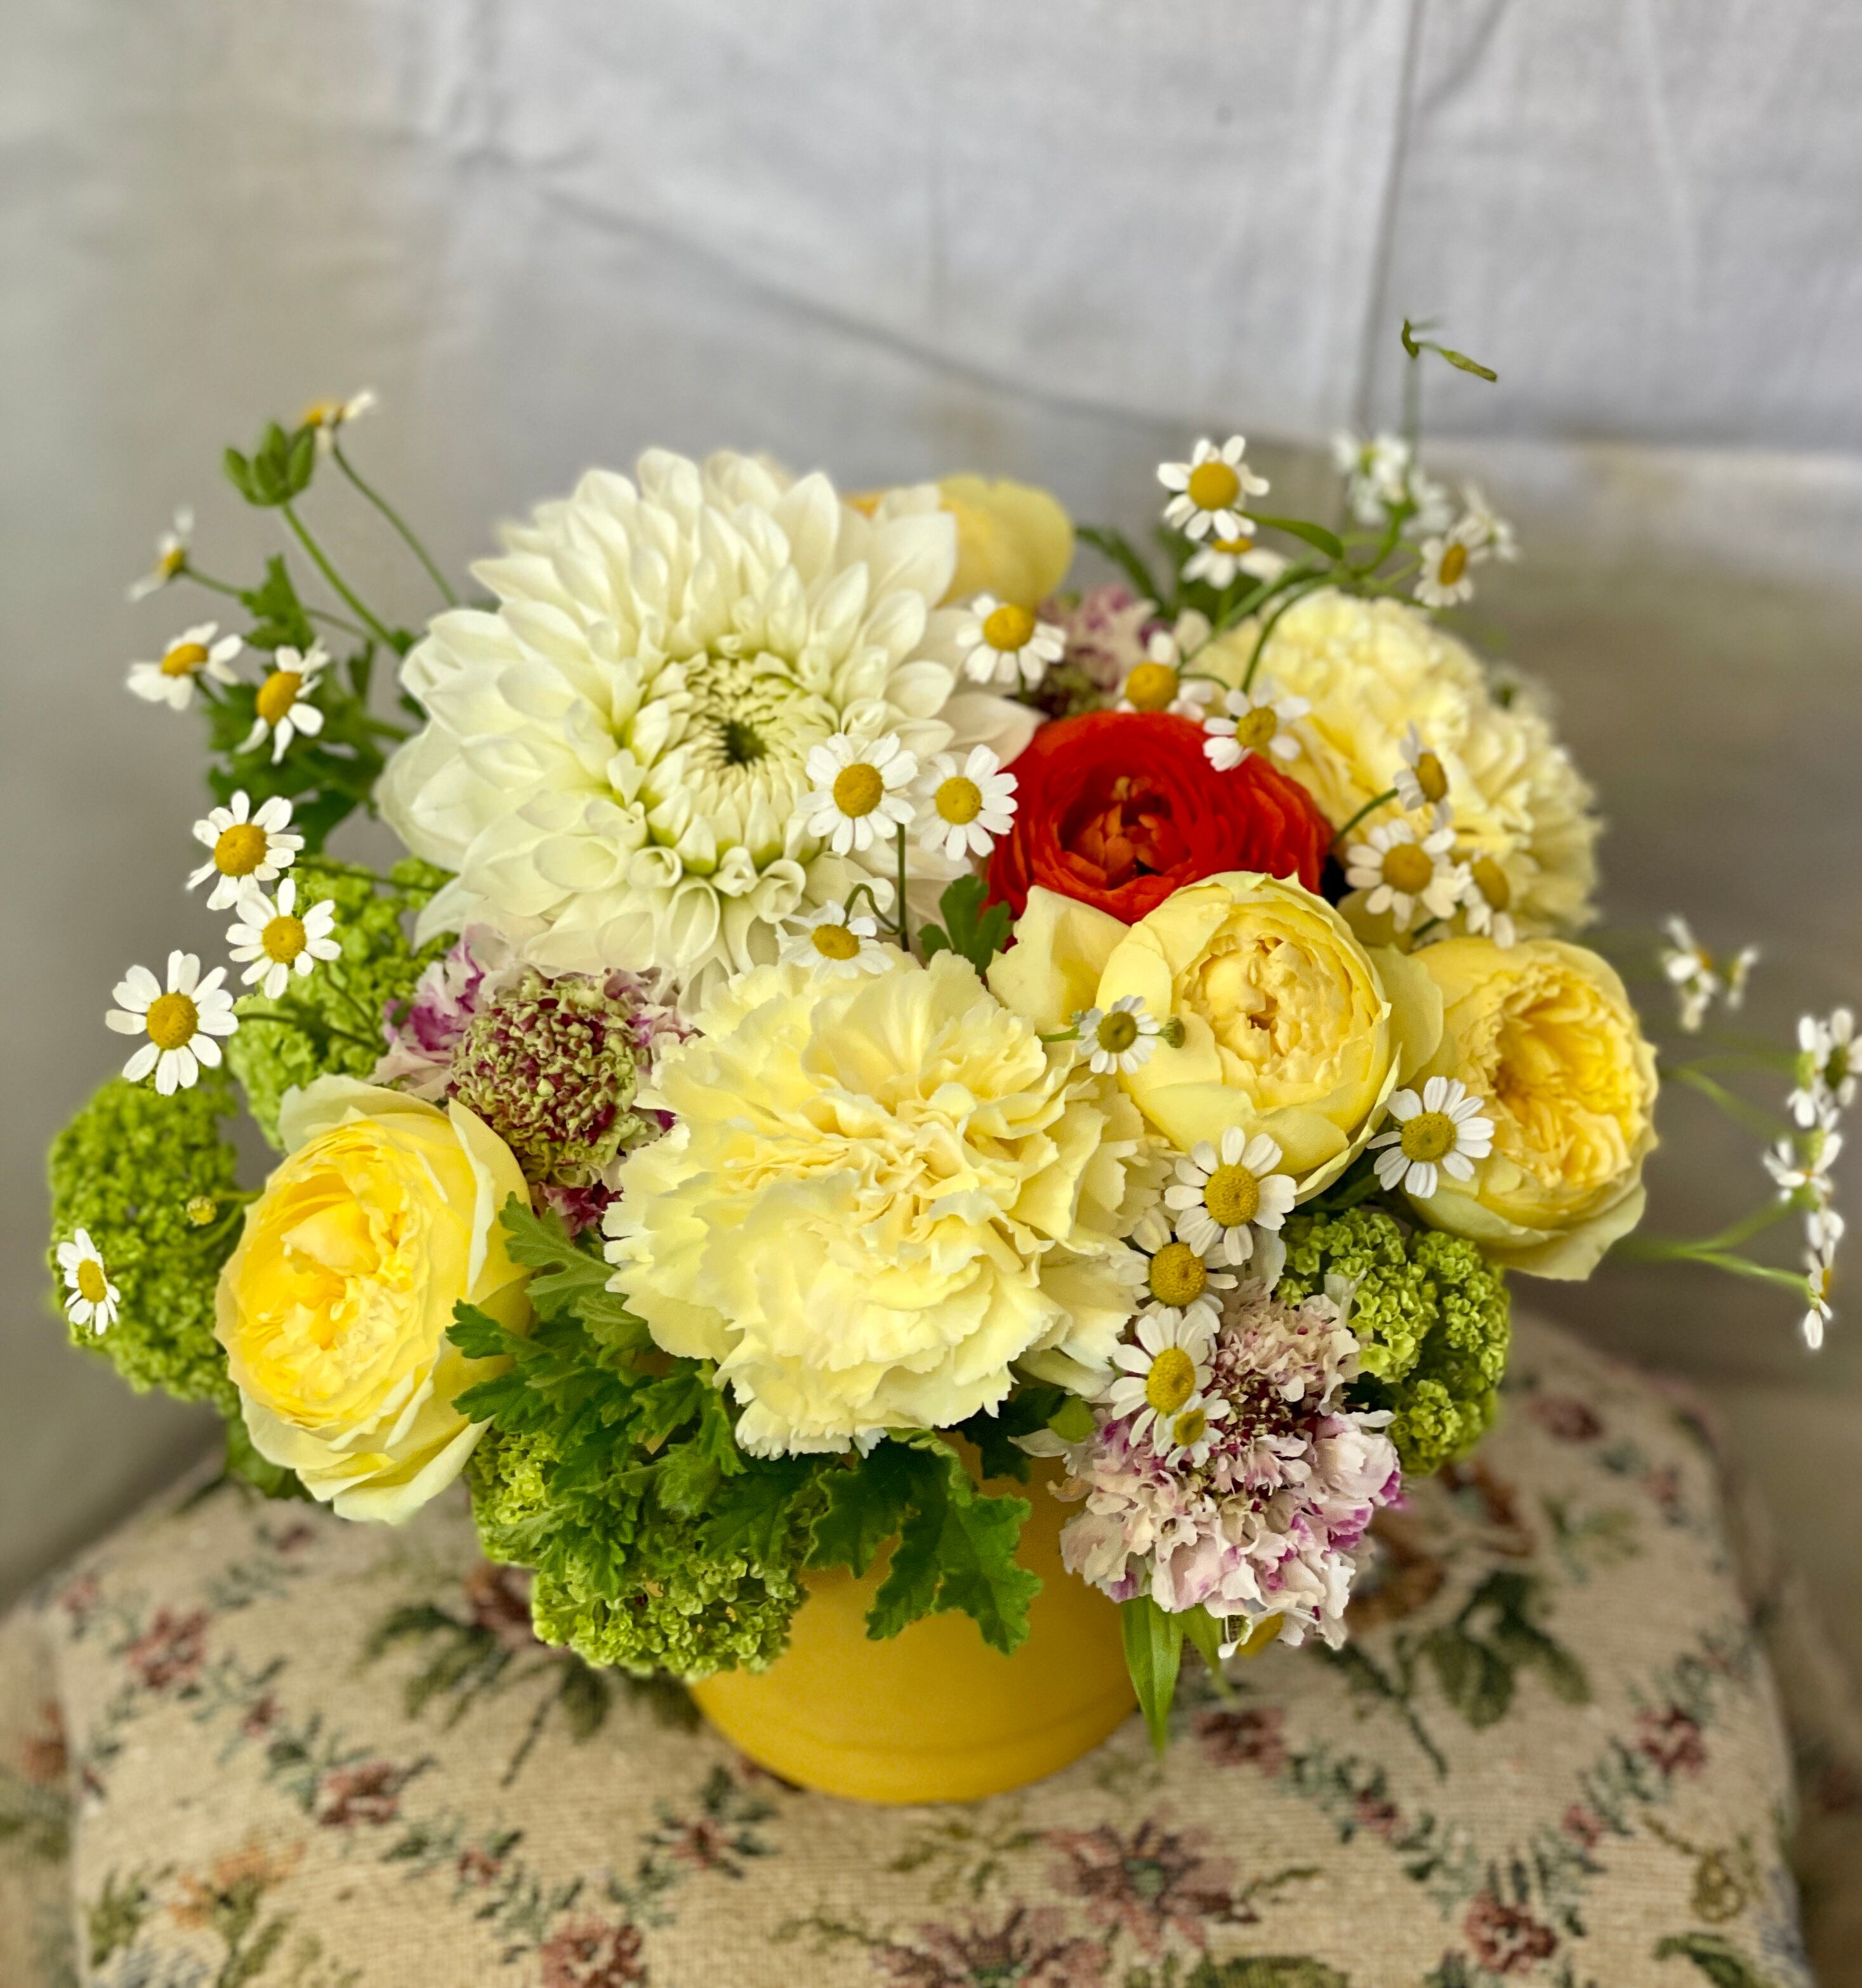 5/11日~12日到着便//thanks flower (S size) //白のダリア   for Mother's Day //